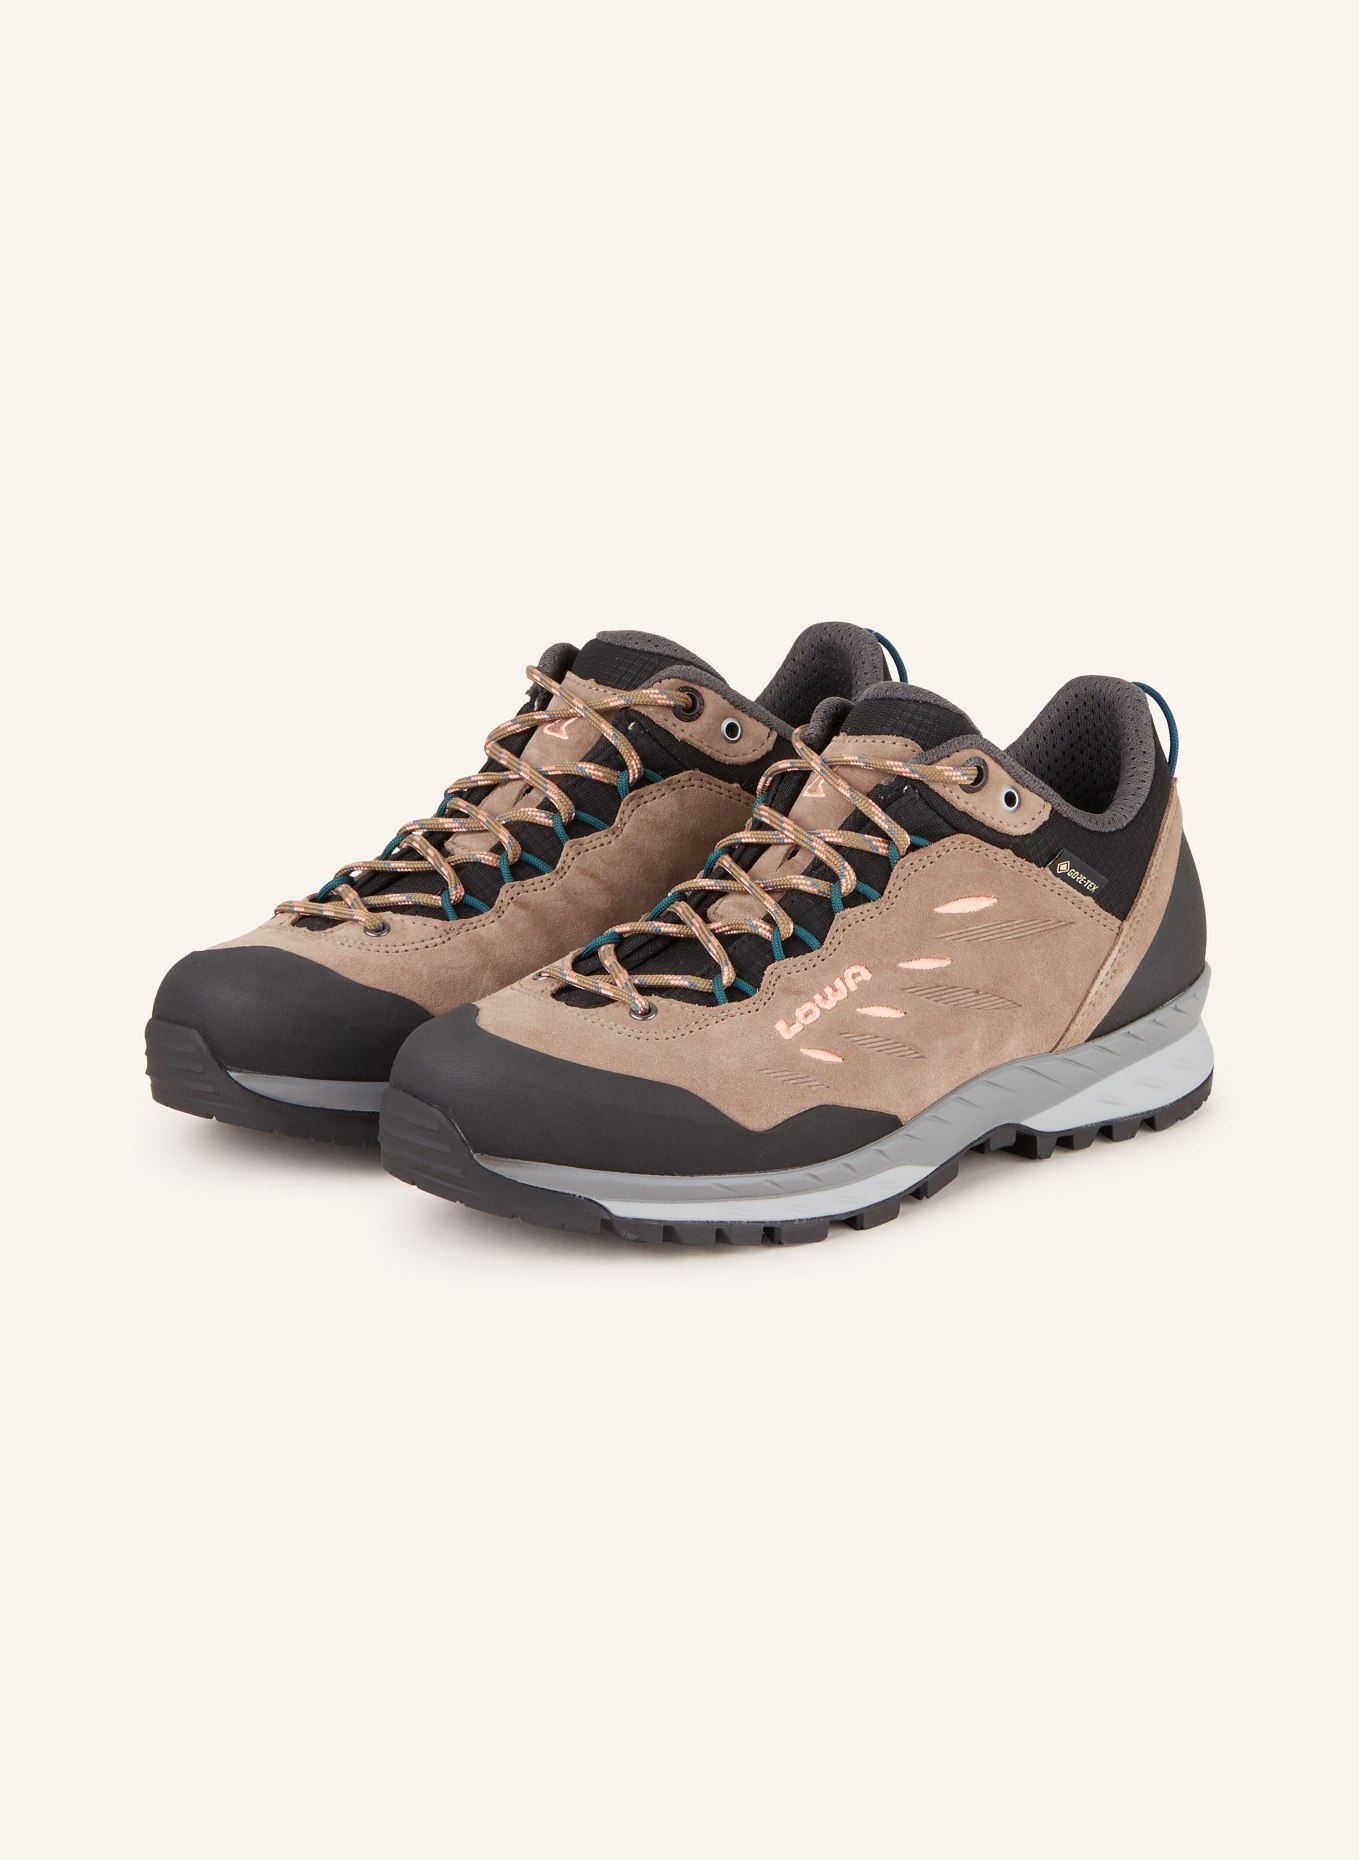 LOWA Outdoor-Schuhe DELAGO GTX , Farbe: CAMEL/ HELLORANGE (Bild 1)